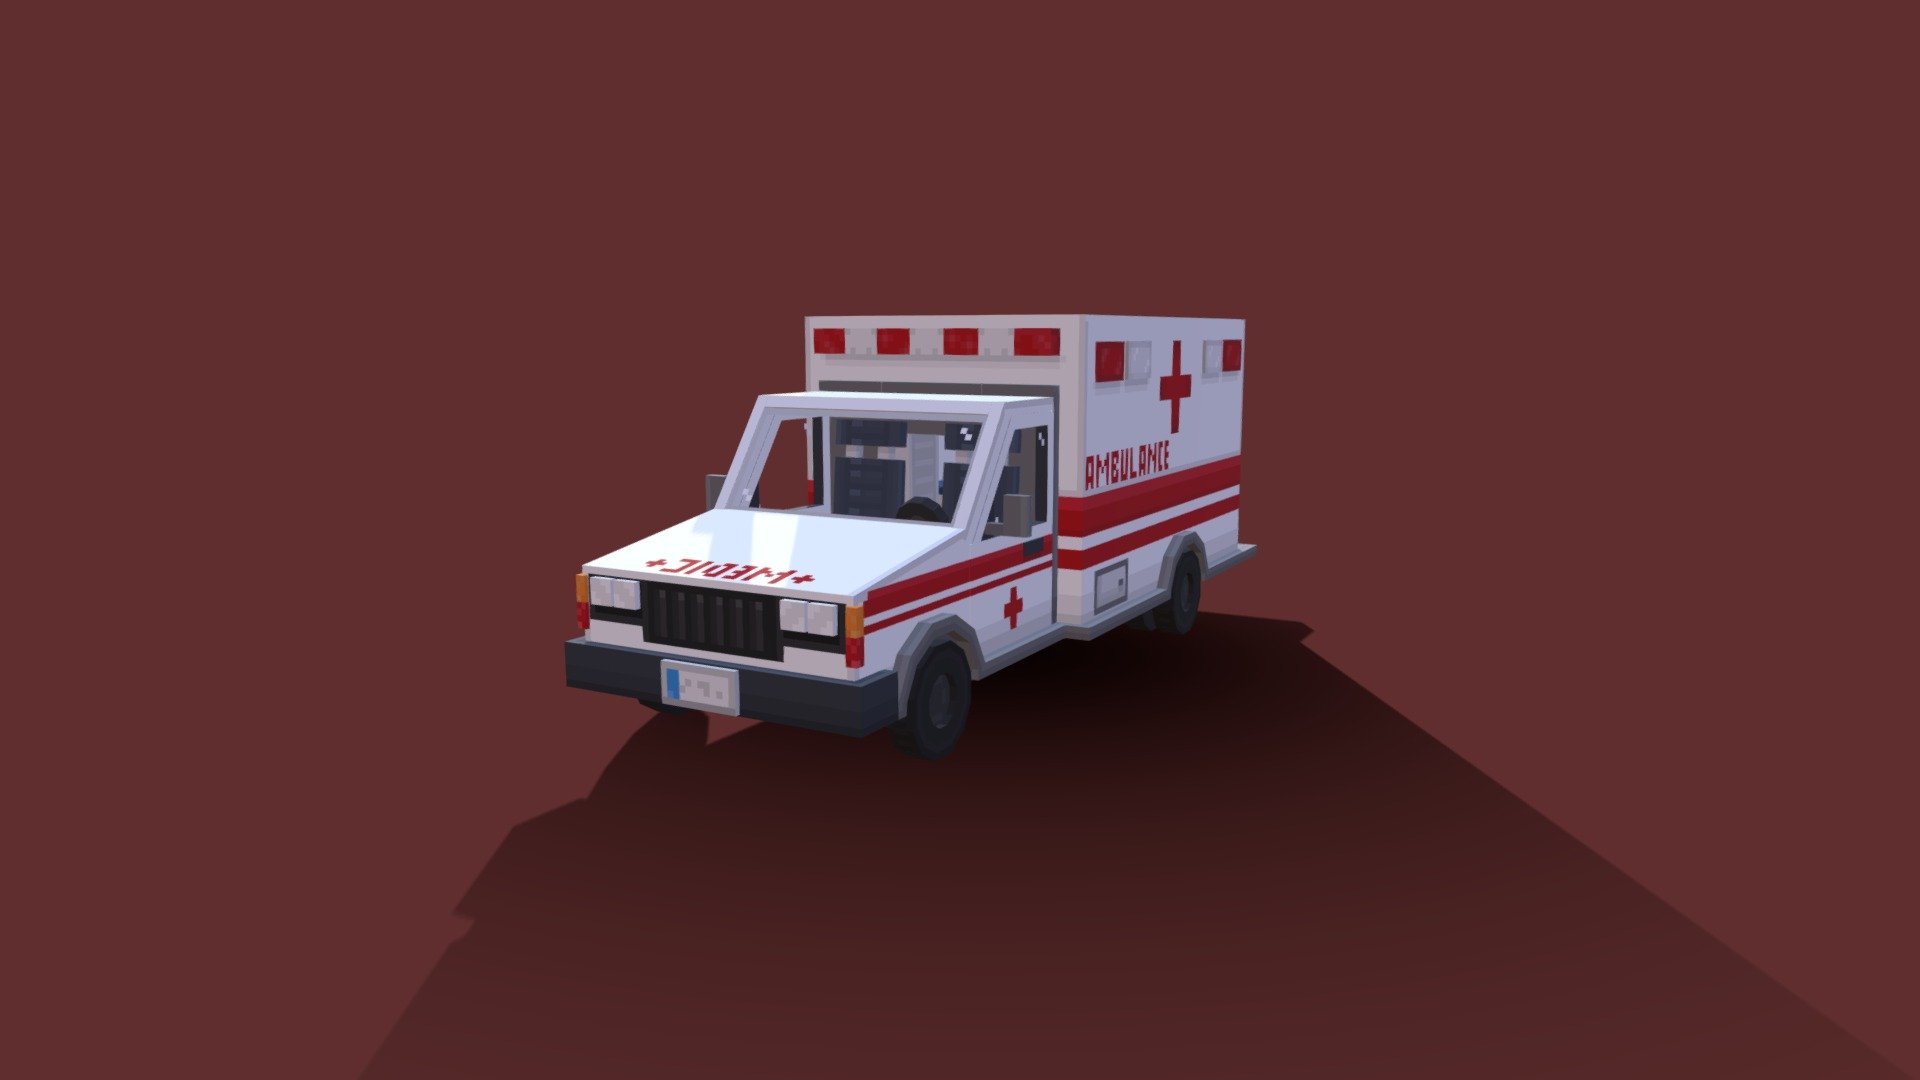 Made in @blockbench - Ambulance van - 3D model by Mladen (@mladen123) 3d model